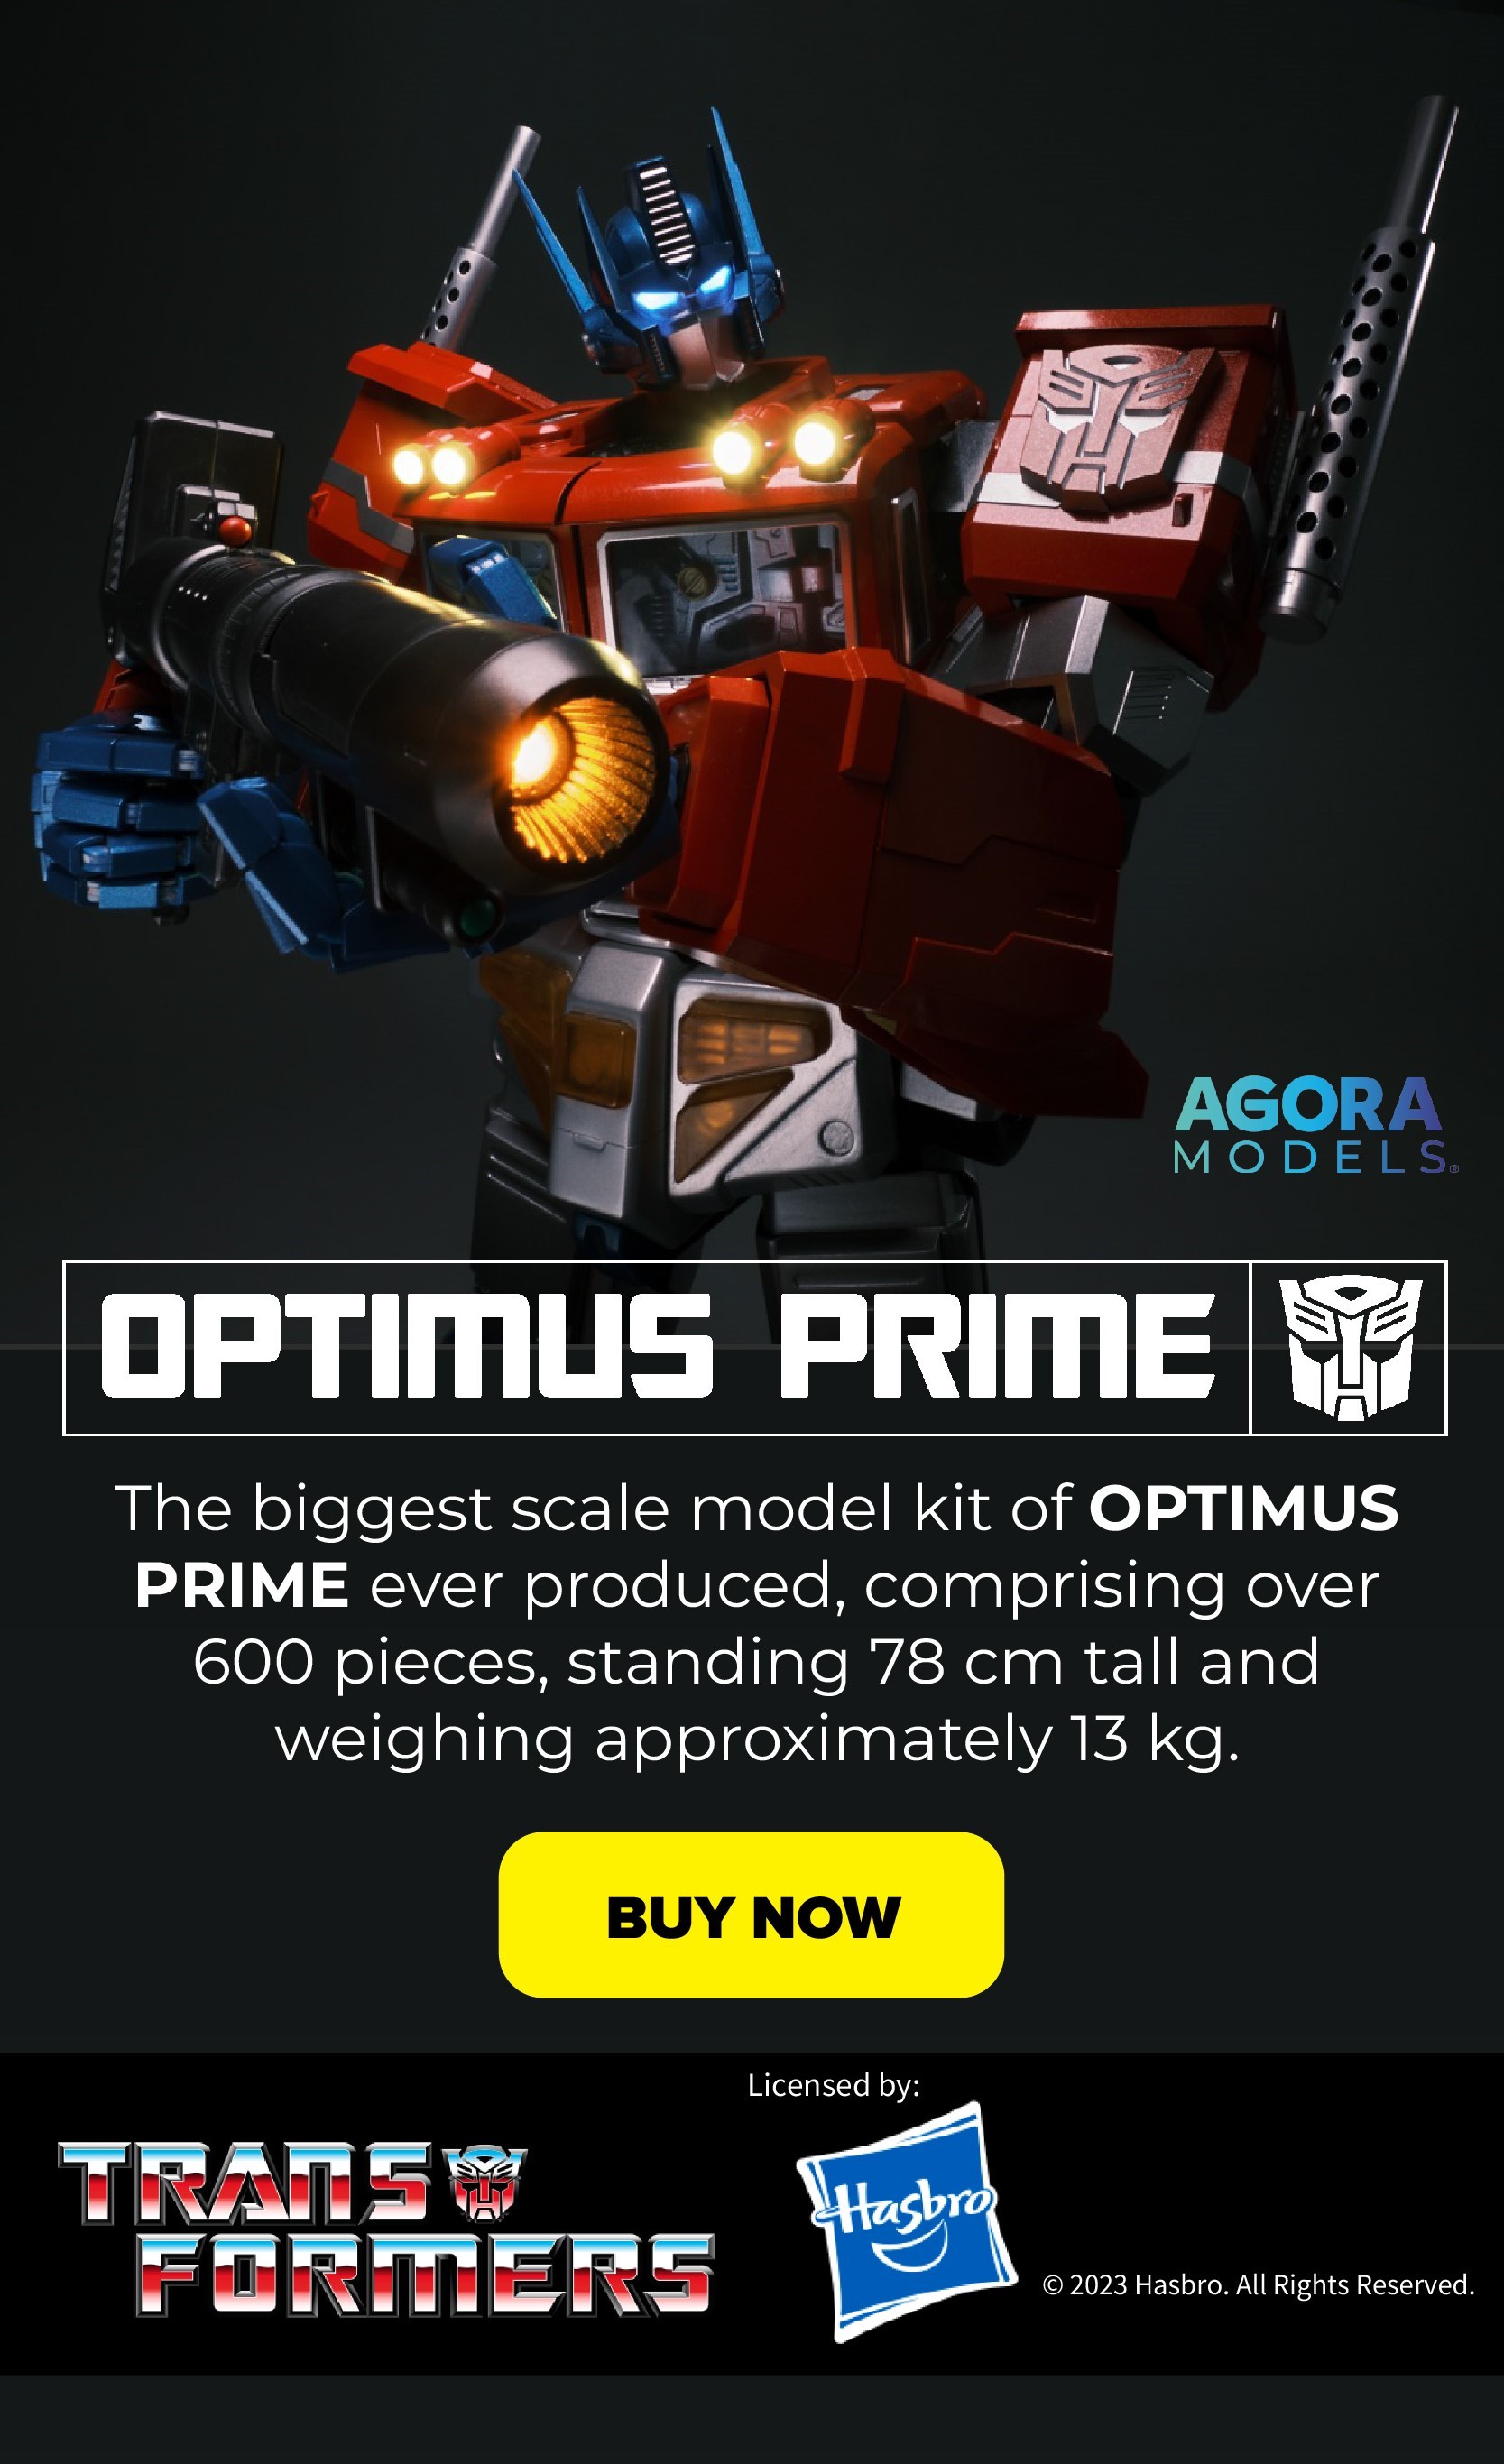 STK Workshop Optimus Prime